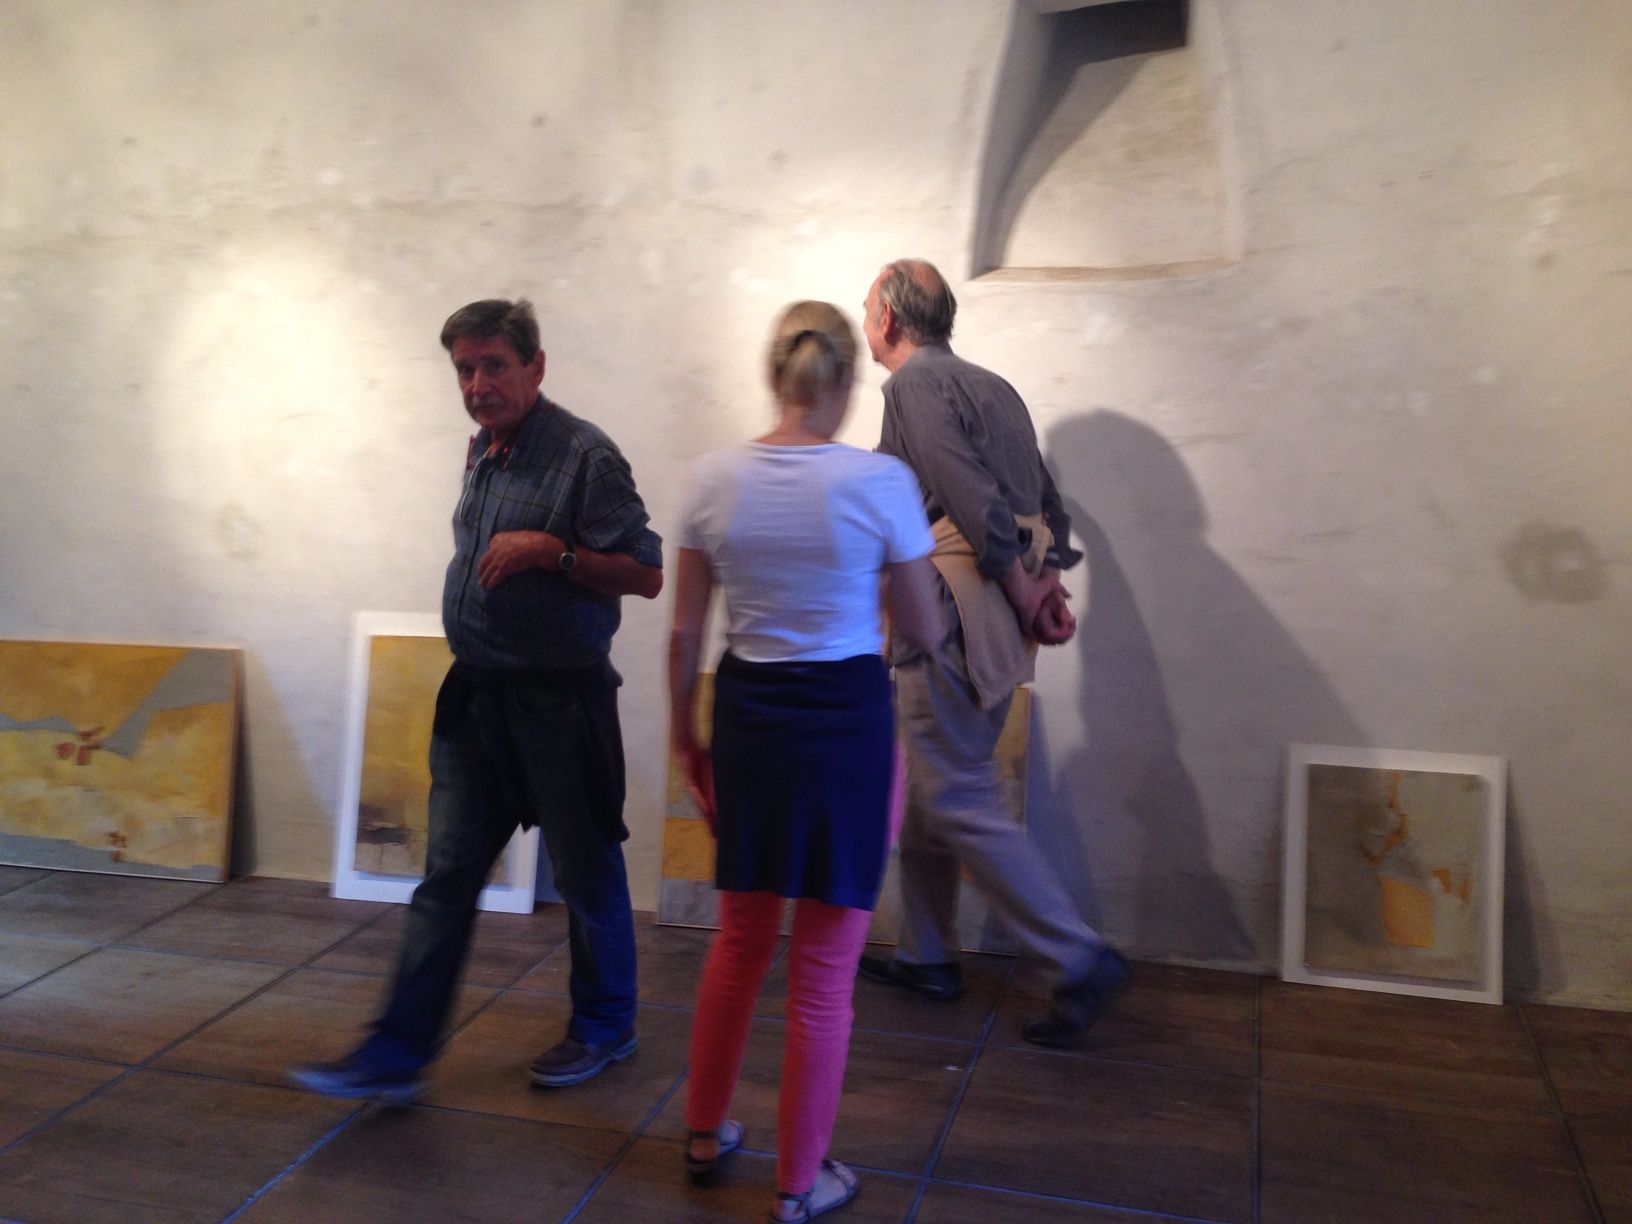 Allestimento Mostra di Emilio Rissone, 28.08.2013 nella Torre Fiorenzana di Grono.